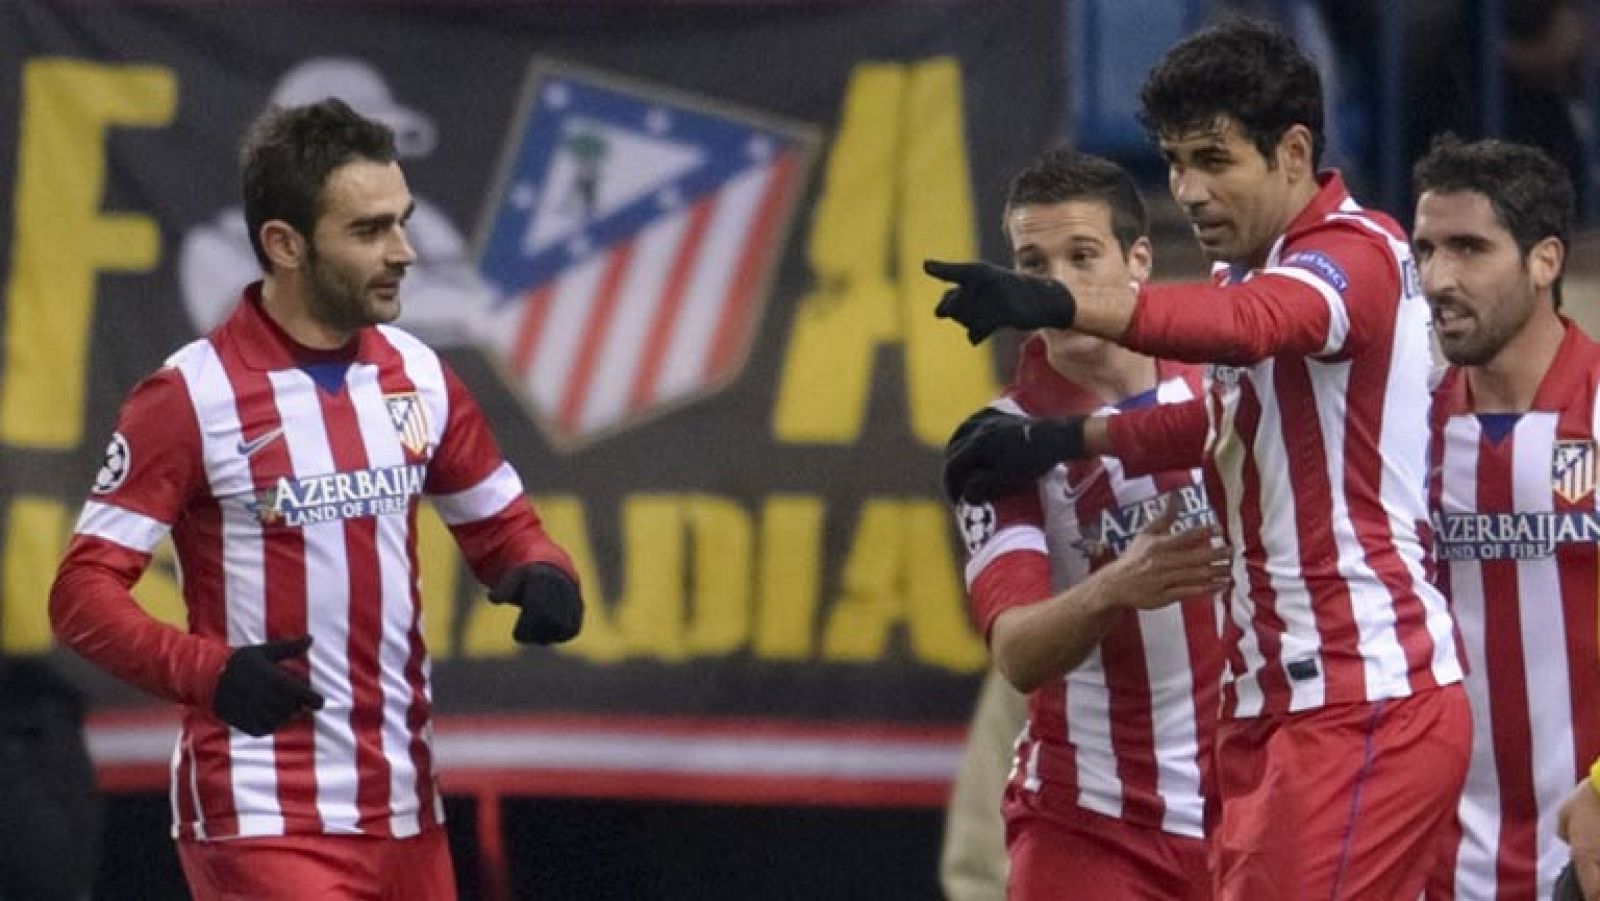 El delantero hispanobrasileño del Atlético de Madrid Diego Costa ha marcado el segundo gol de su equipo ante el Oporto, tras culminar un gran contragolpe en el minuto 35 de juego.